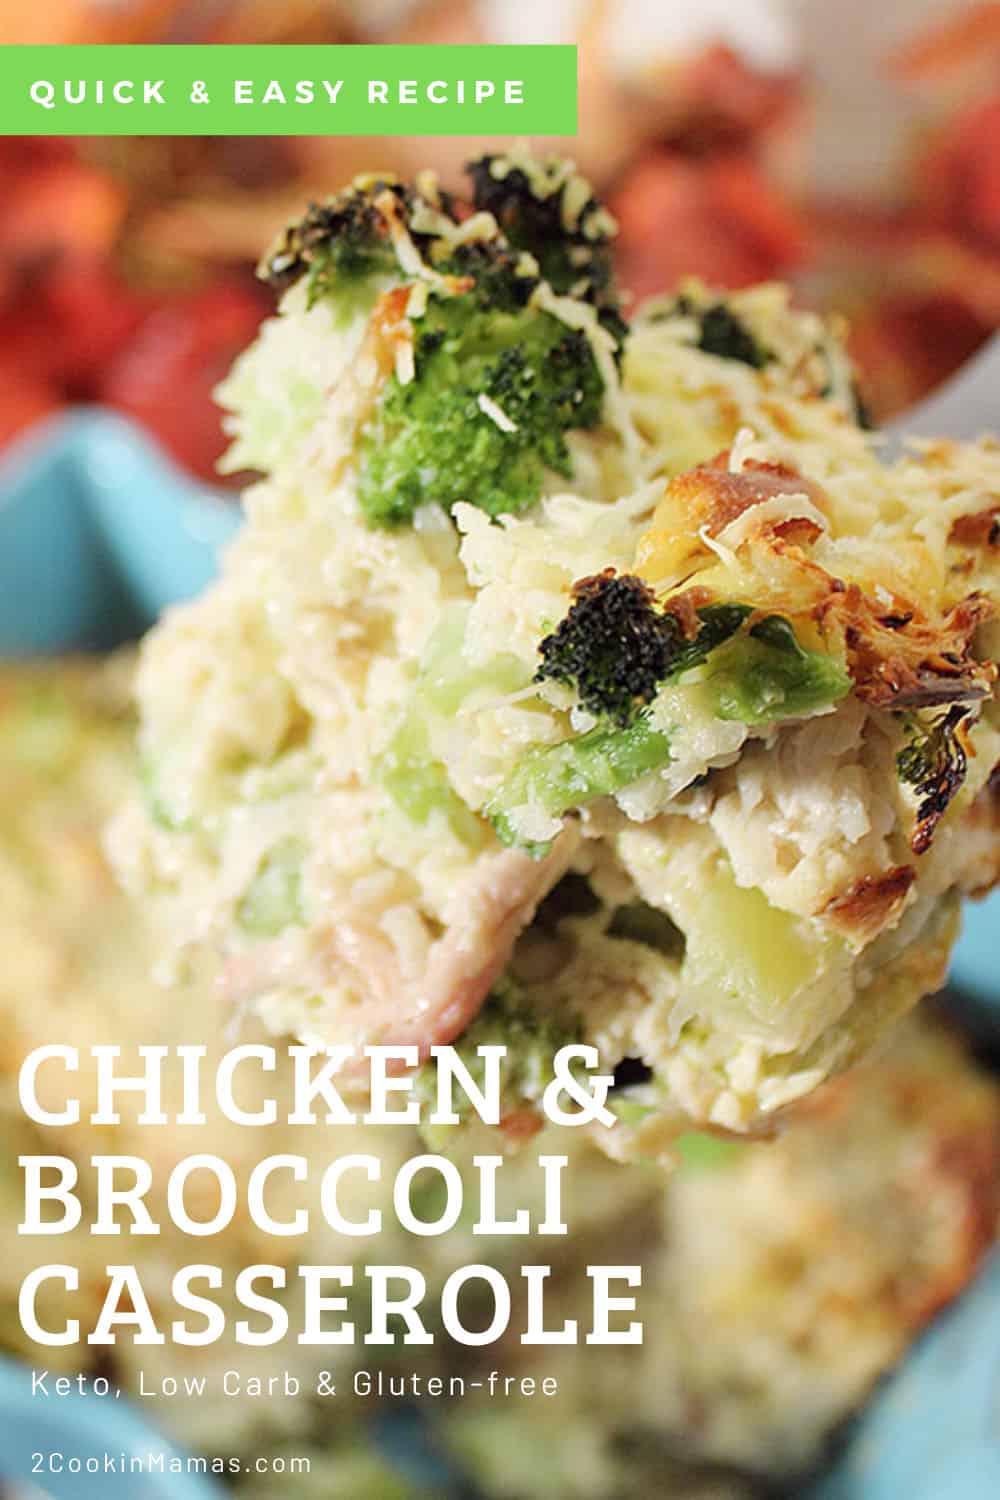 Keto Chicken Broccoli Casserole